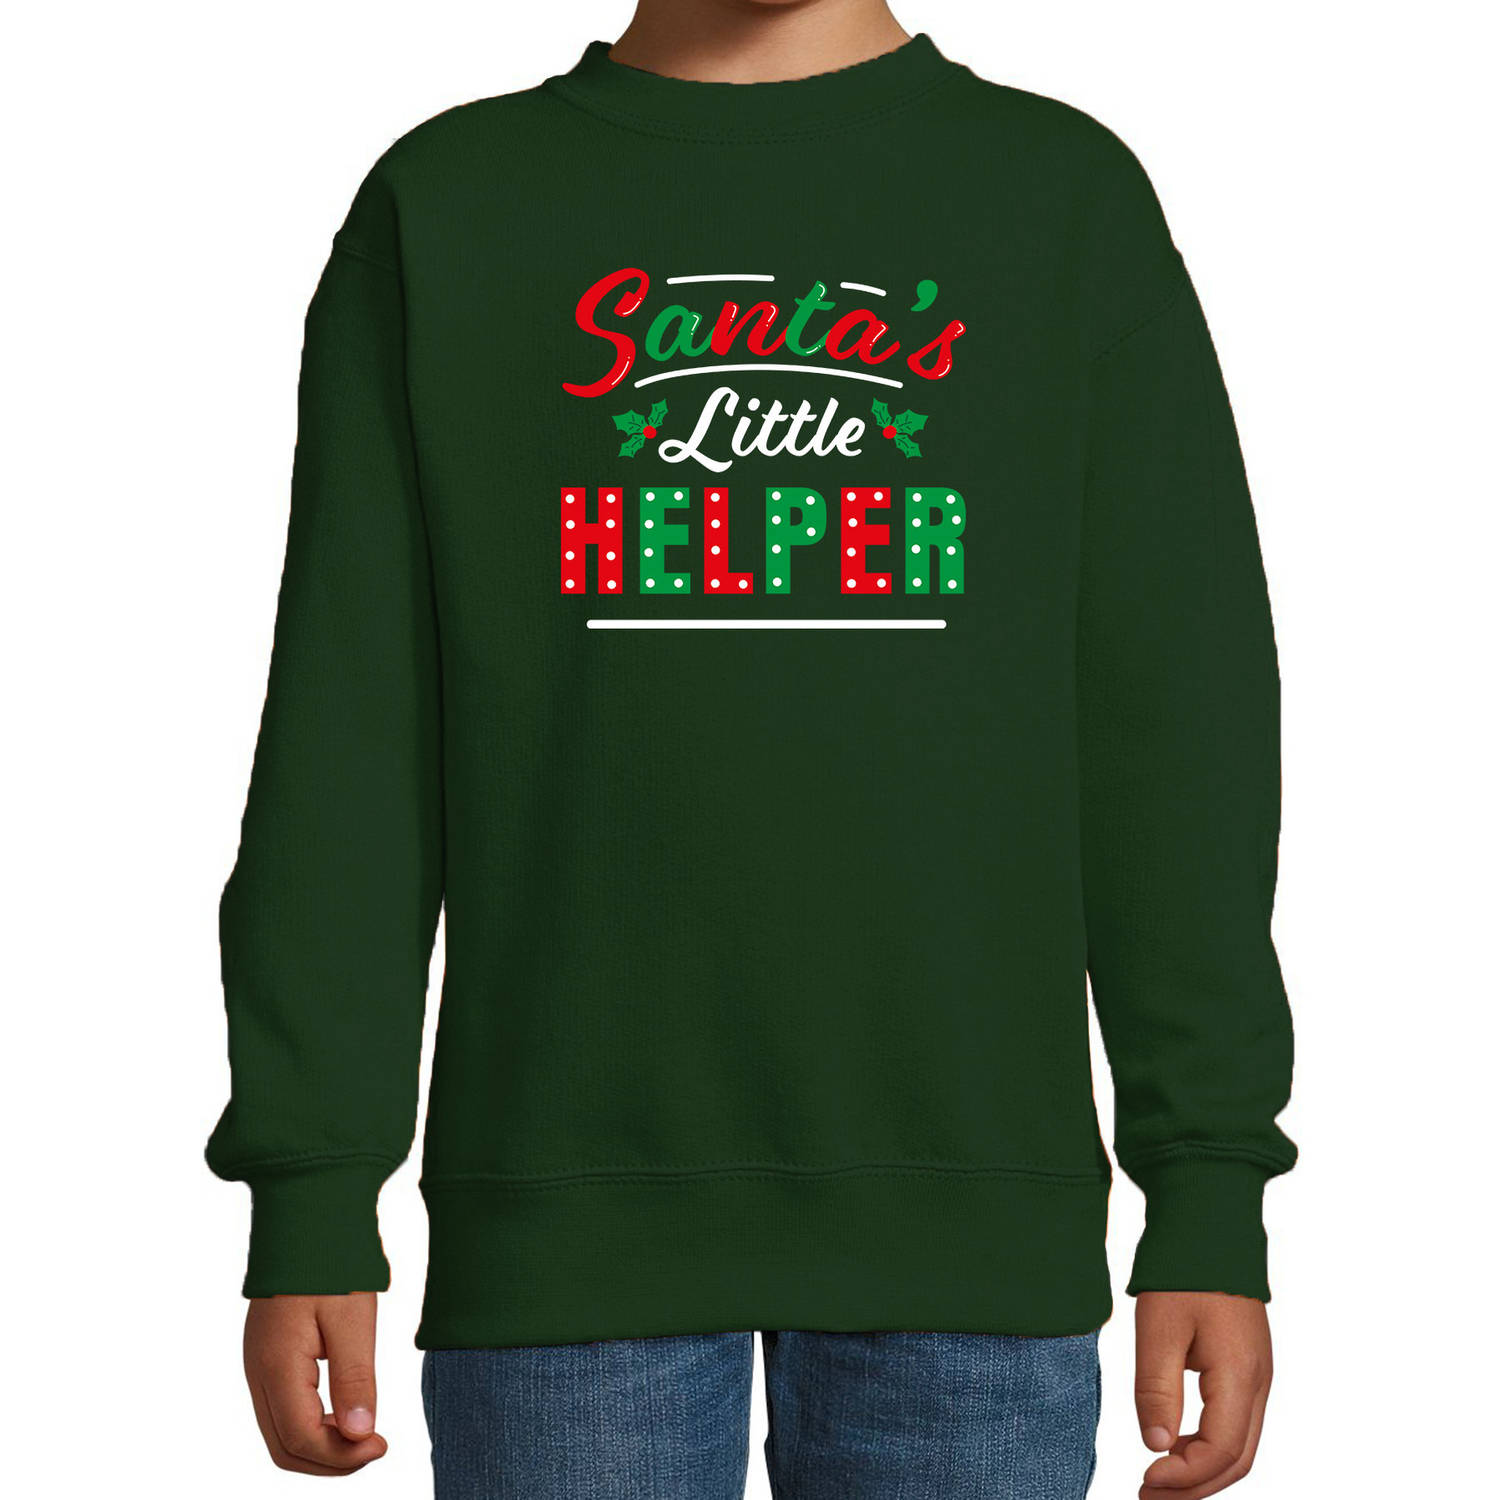 Santas little helper / Het hulpje van de Kerstman Kerstsweater / Kersttrui groen voor kinderen 3-4 jaar (98/104) - kerst